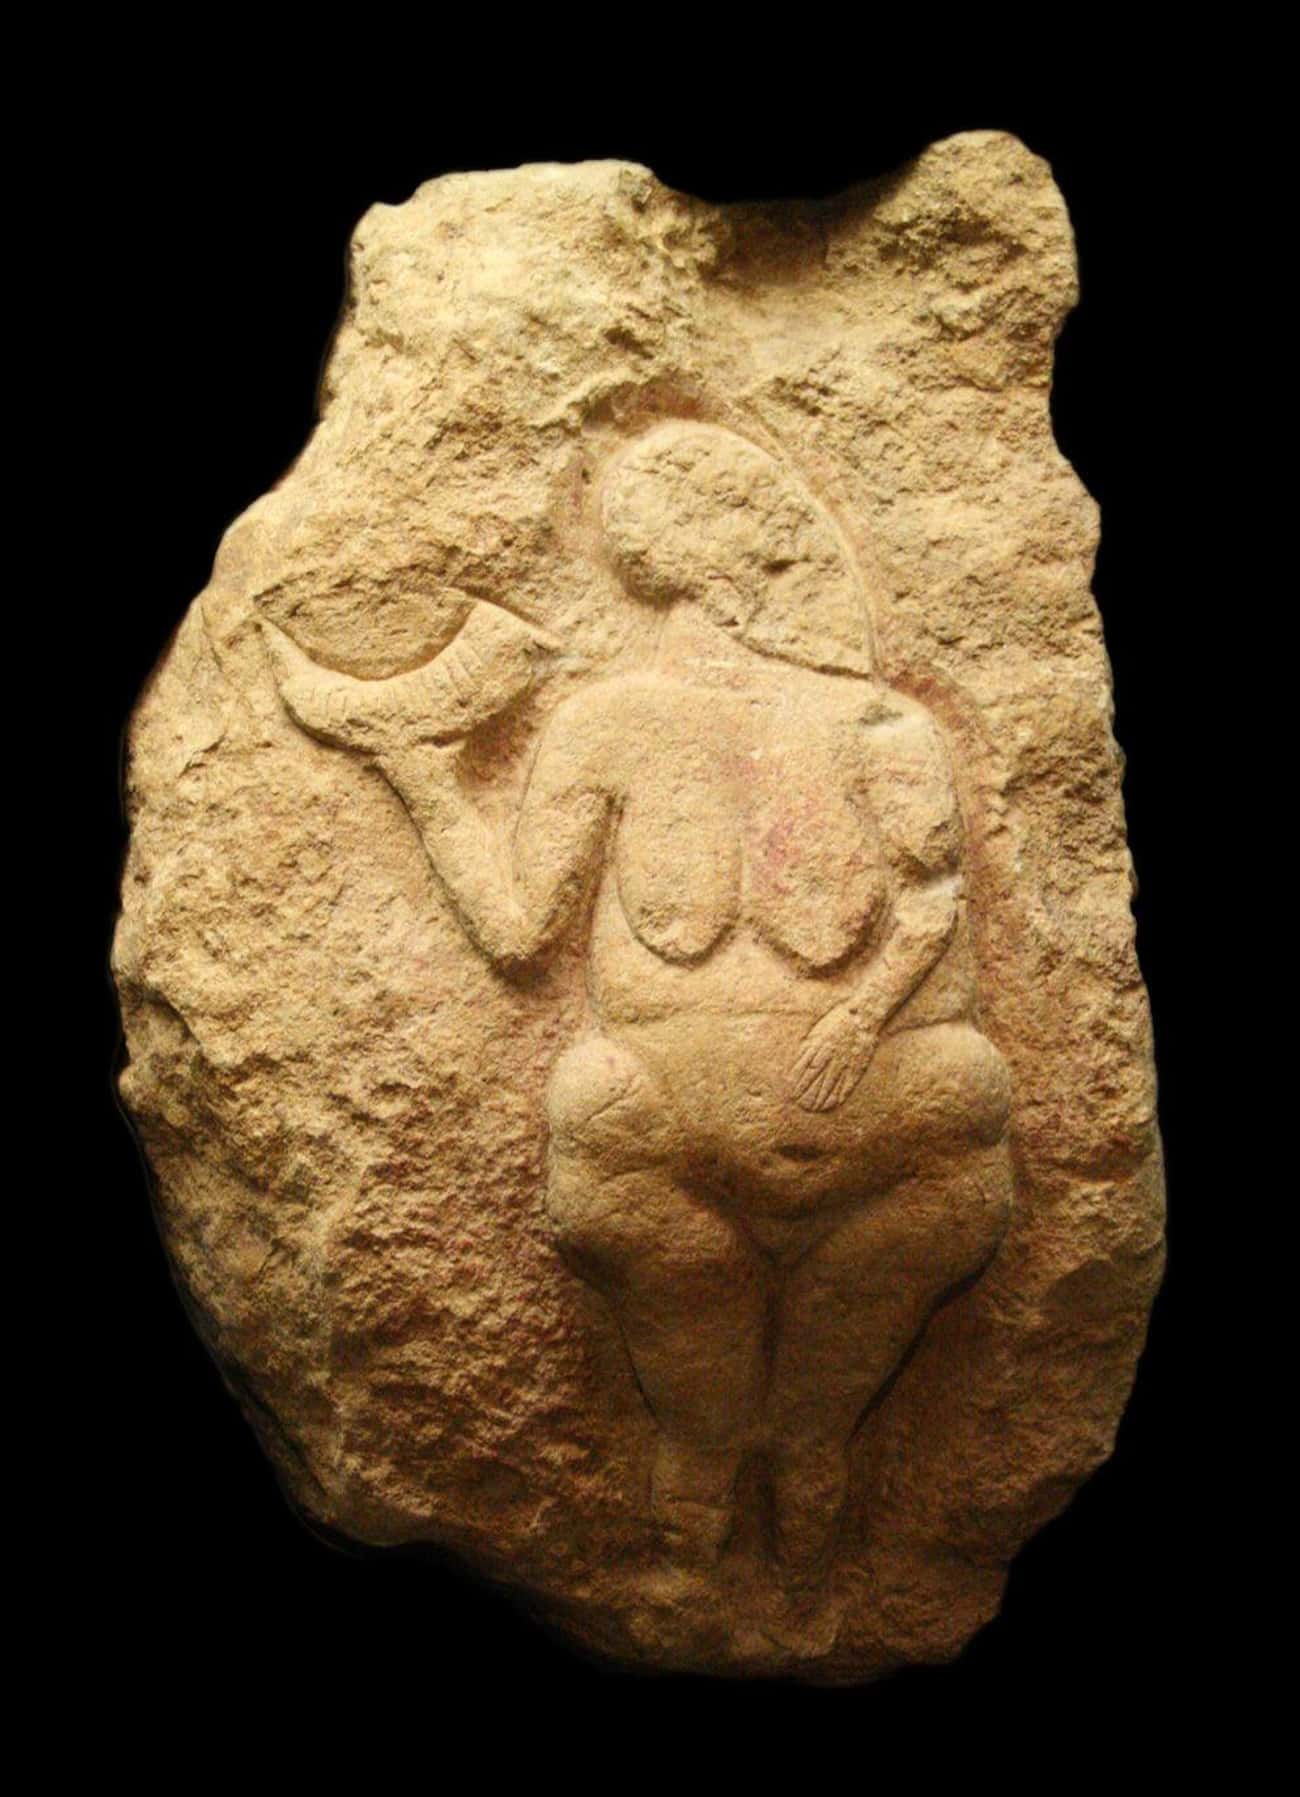 Experts Believe Prehistoric Women Were "Extraordinarily Promiscuous"